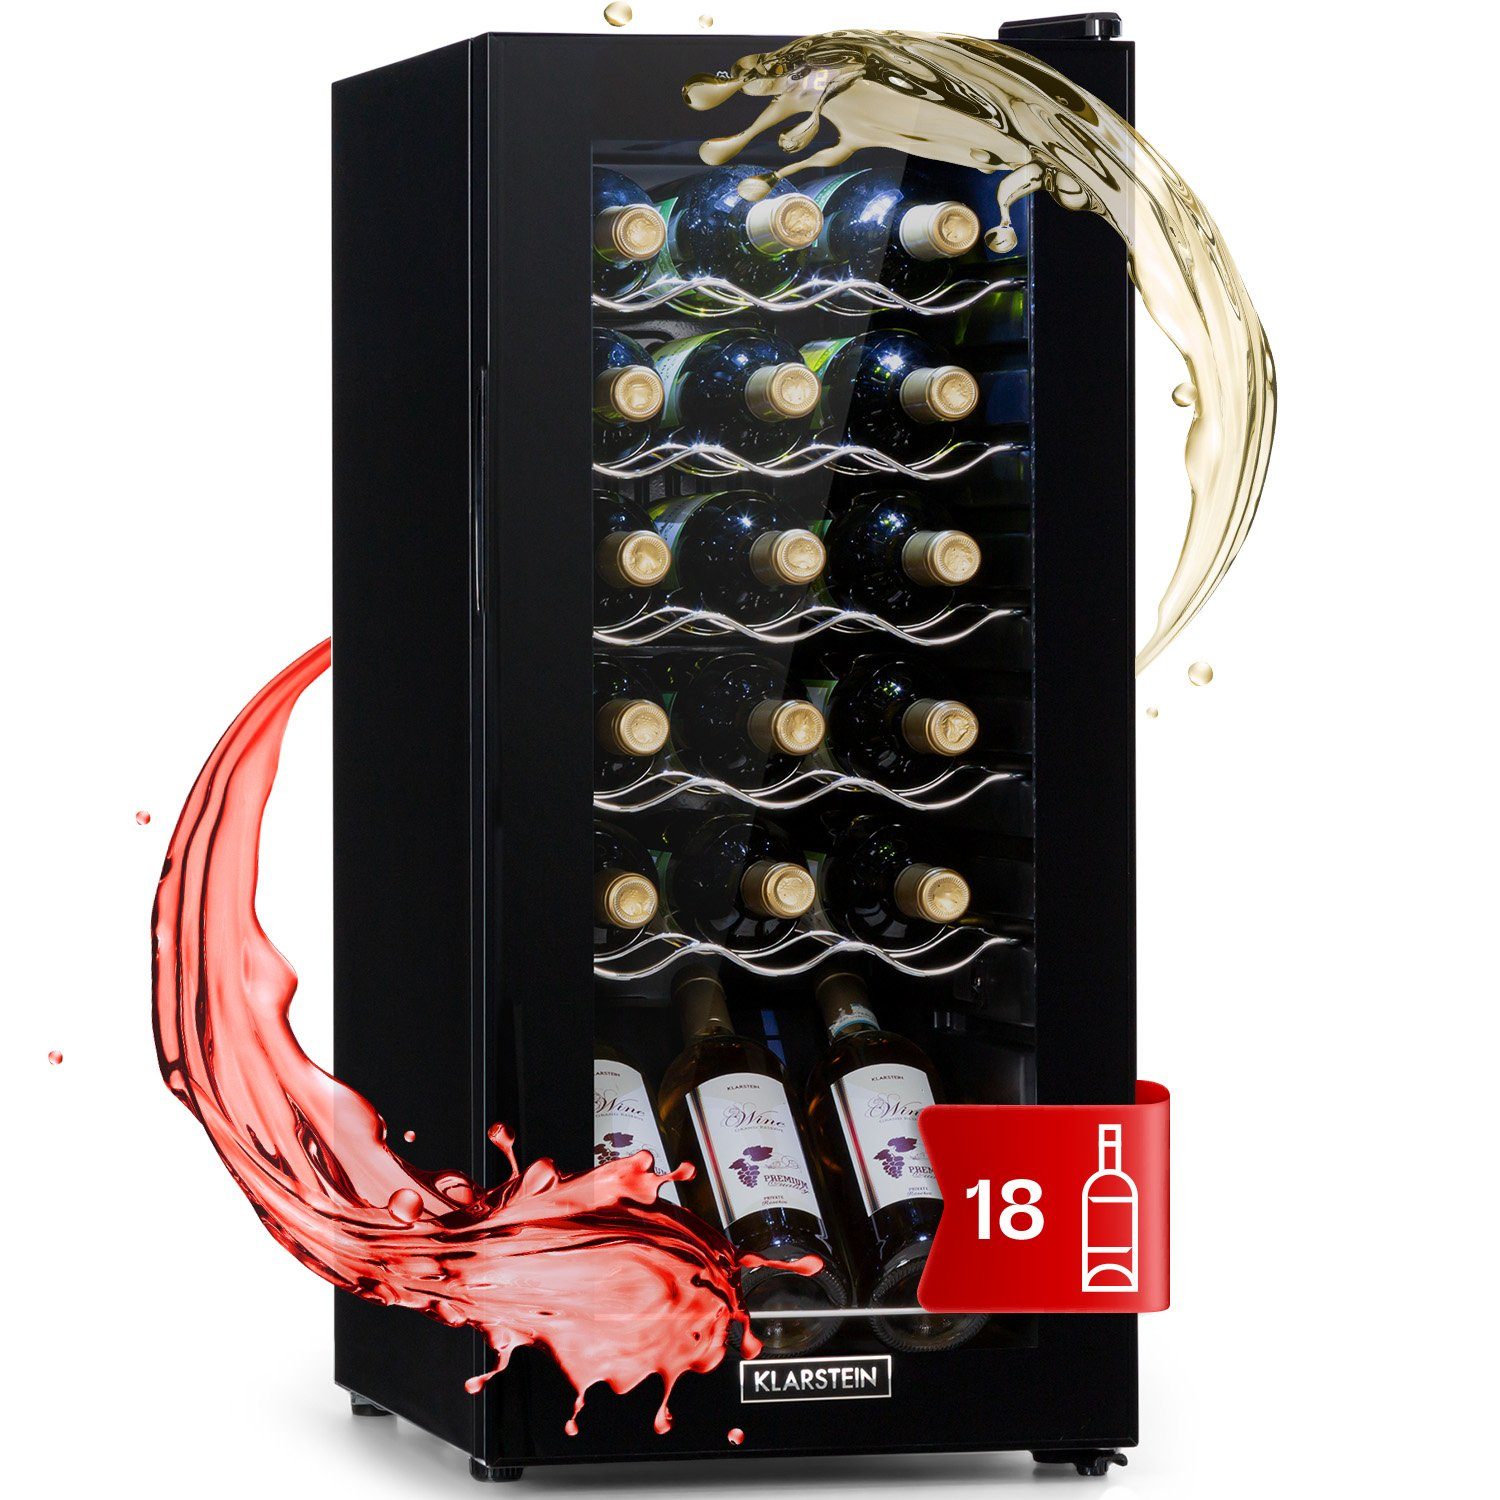 Klarstein Weinkühlschrank Shiraz 18 Uno, für 18 Standardflaschen á 0,75l,Wein Flaschenkühlschrank Weintemperierschrank Weinschrank Kühlschrank